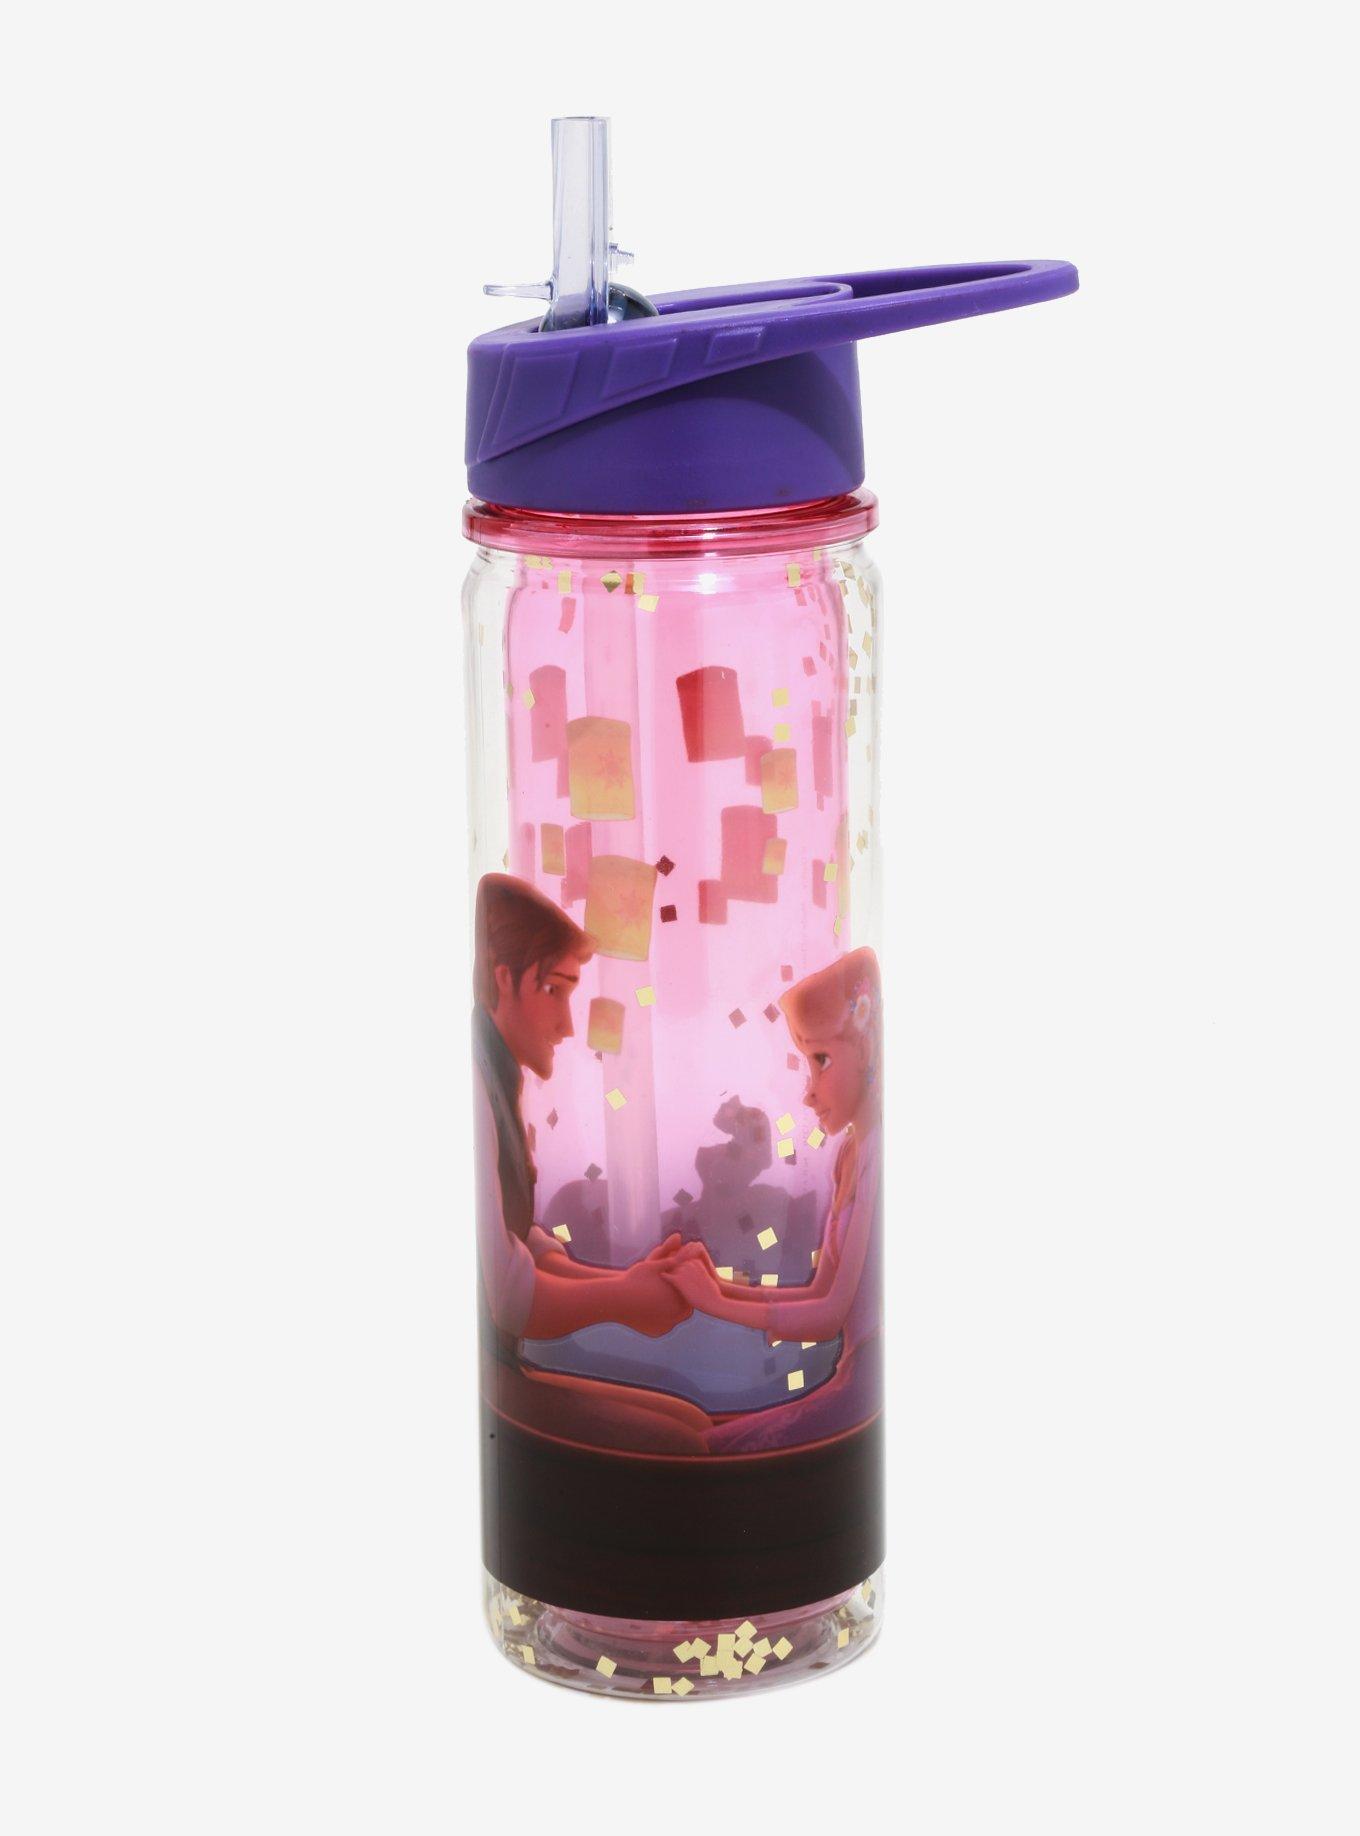 Disney Store Rapunzel Bottle, Tangled